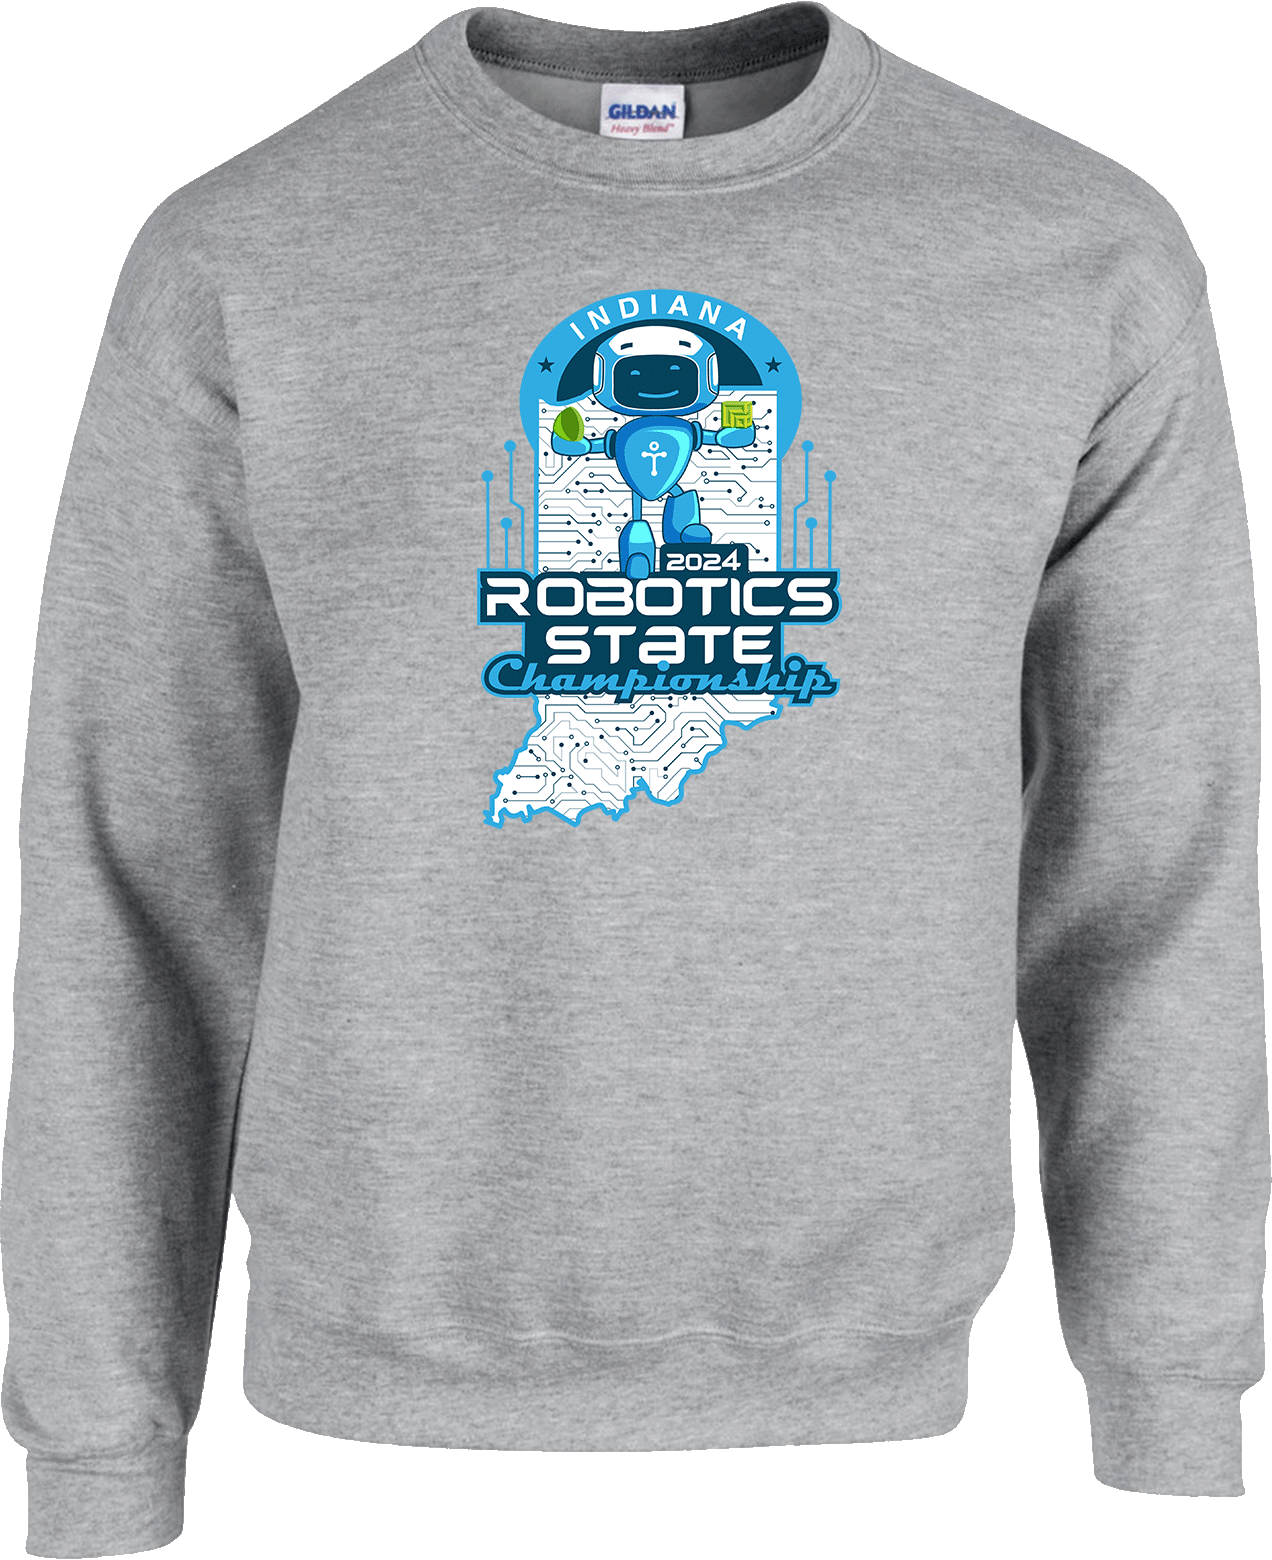 Crew Sweatershirt - 2024 Indiana Robotics State Championship